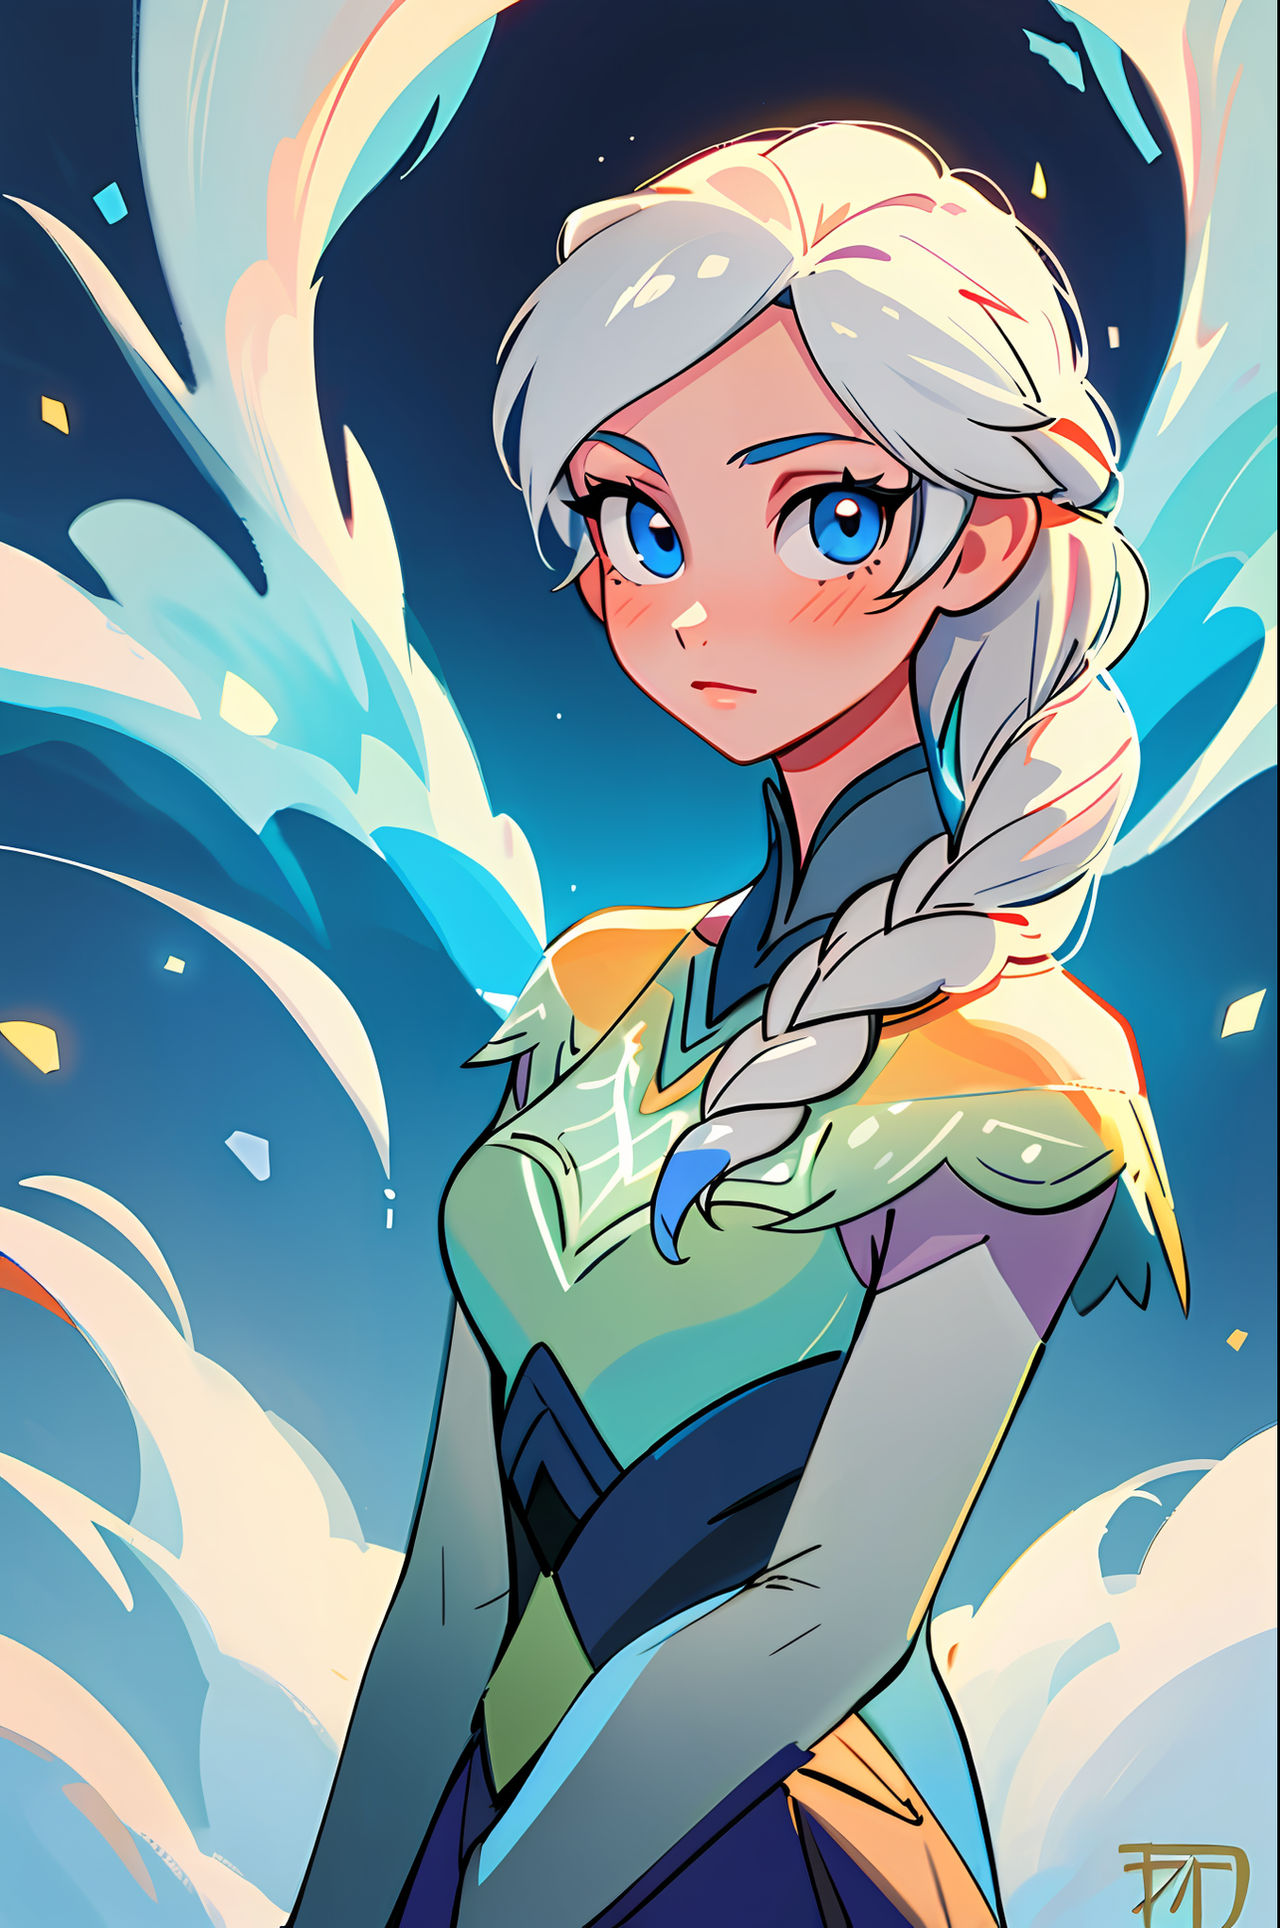 Elsa (Frozen) by Dantegonist on DeviantArt